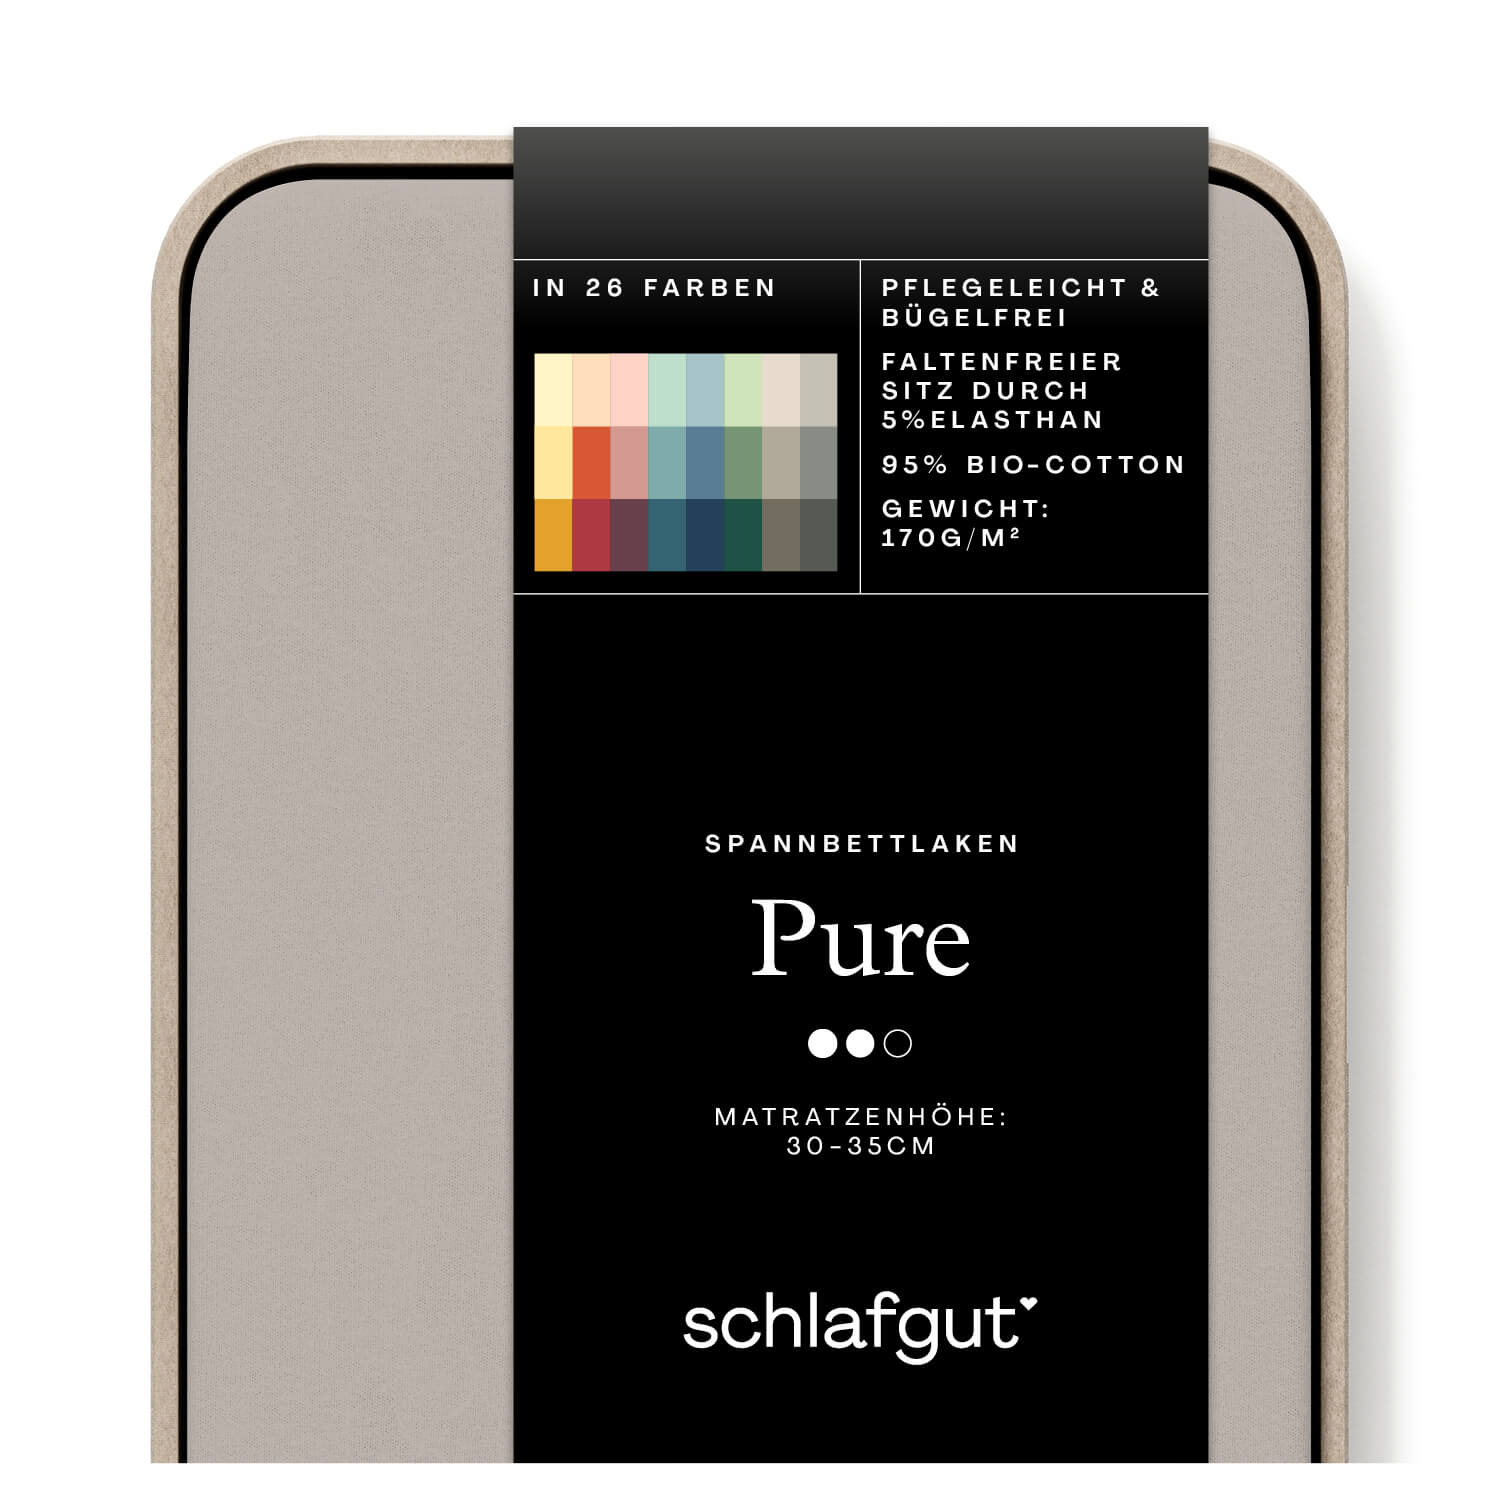 Das Produktbild vom Spannbettlaken der Reihe Pure in Farbe sand mid von Schlafgut